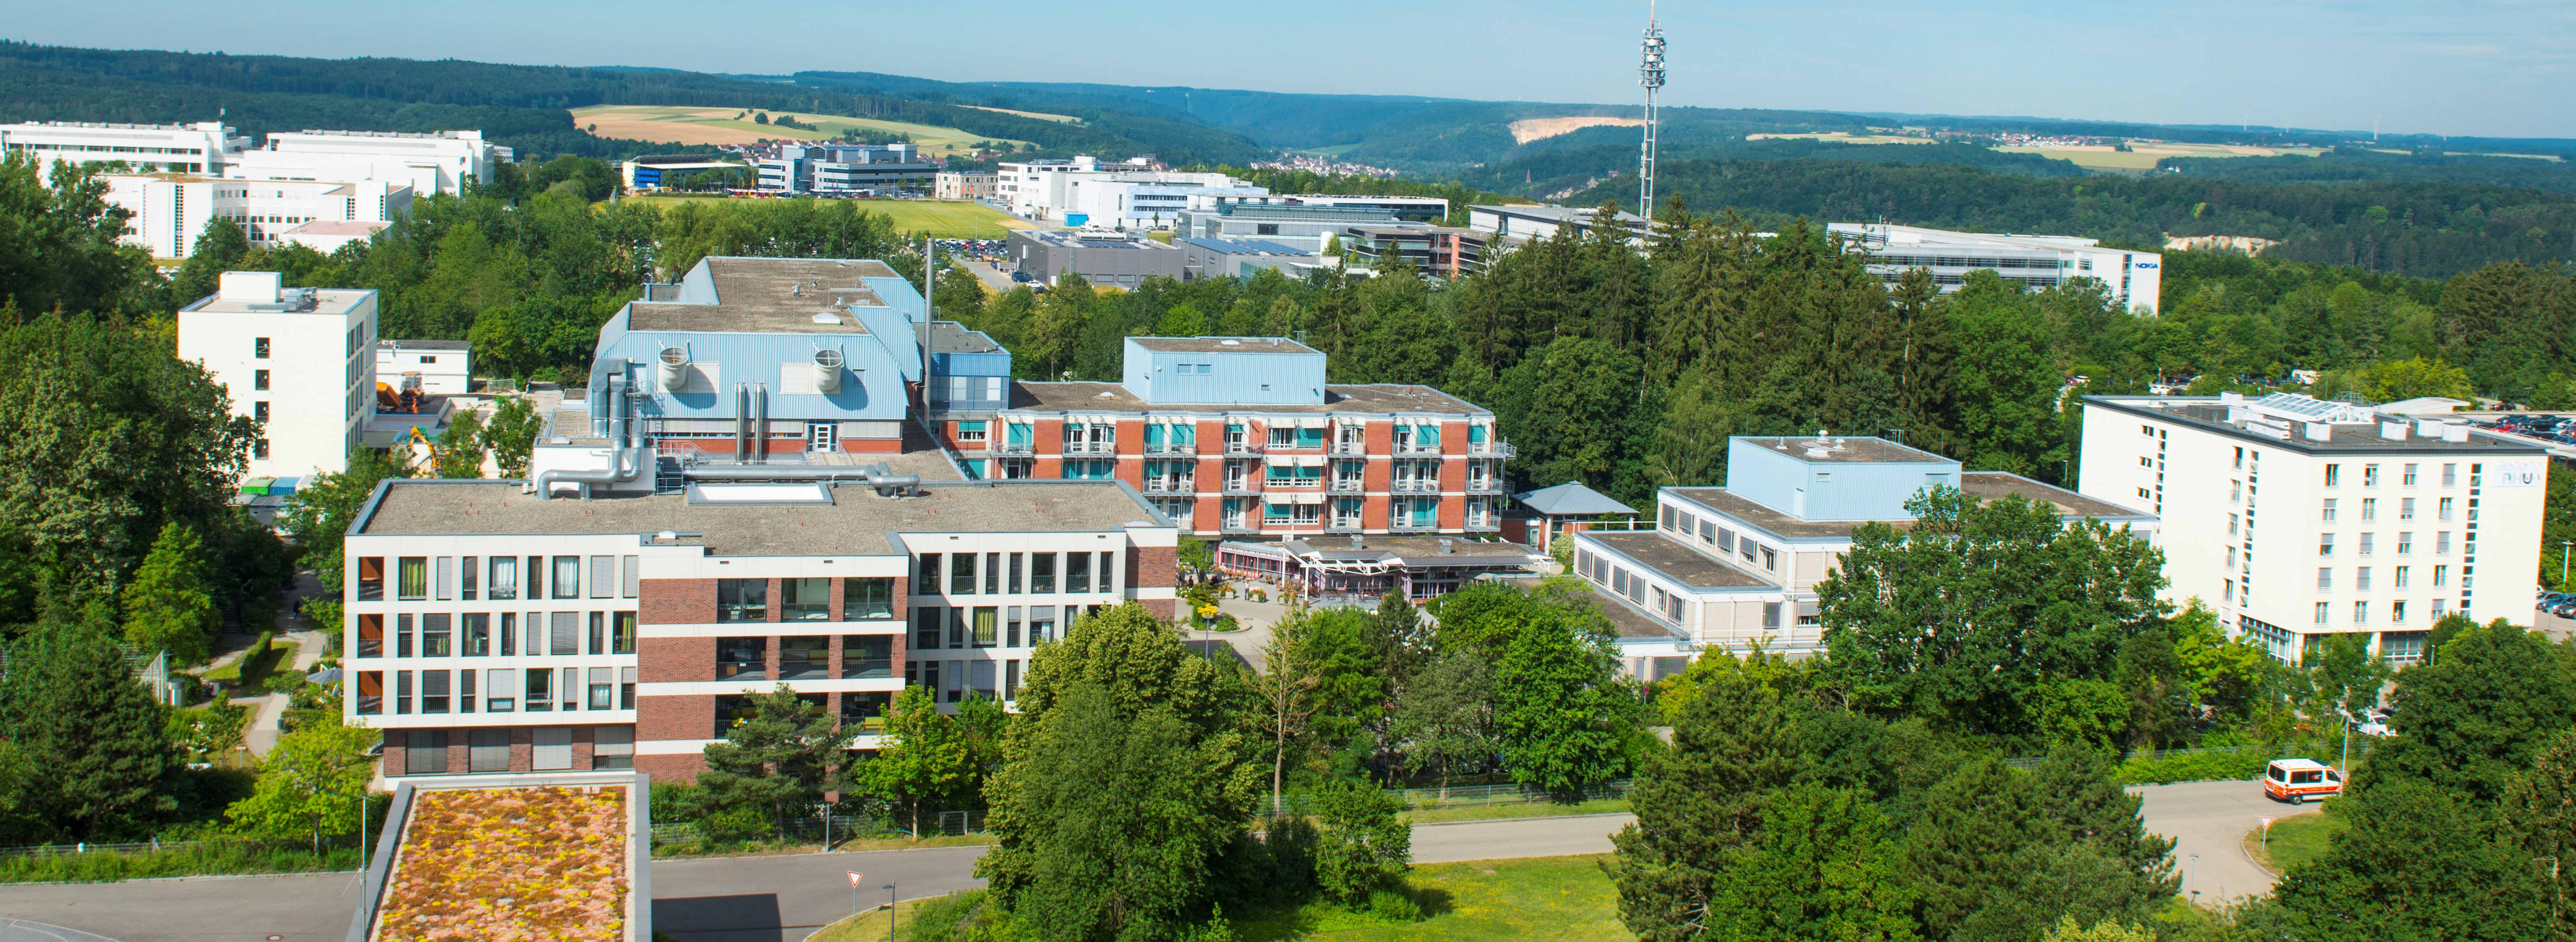 Das Bild zeigt die RKU Universitäts- und Rehabilitationsklinikum Ulm 